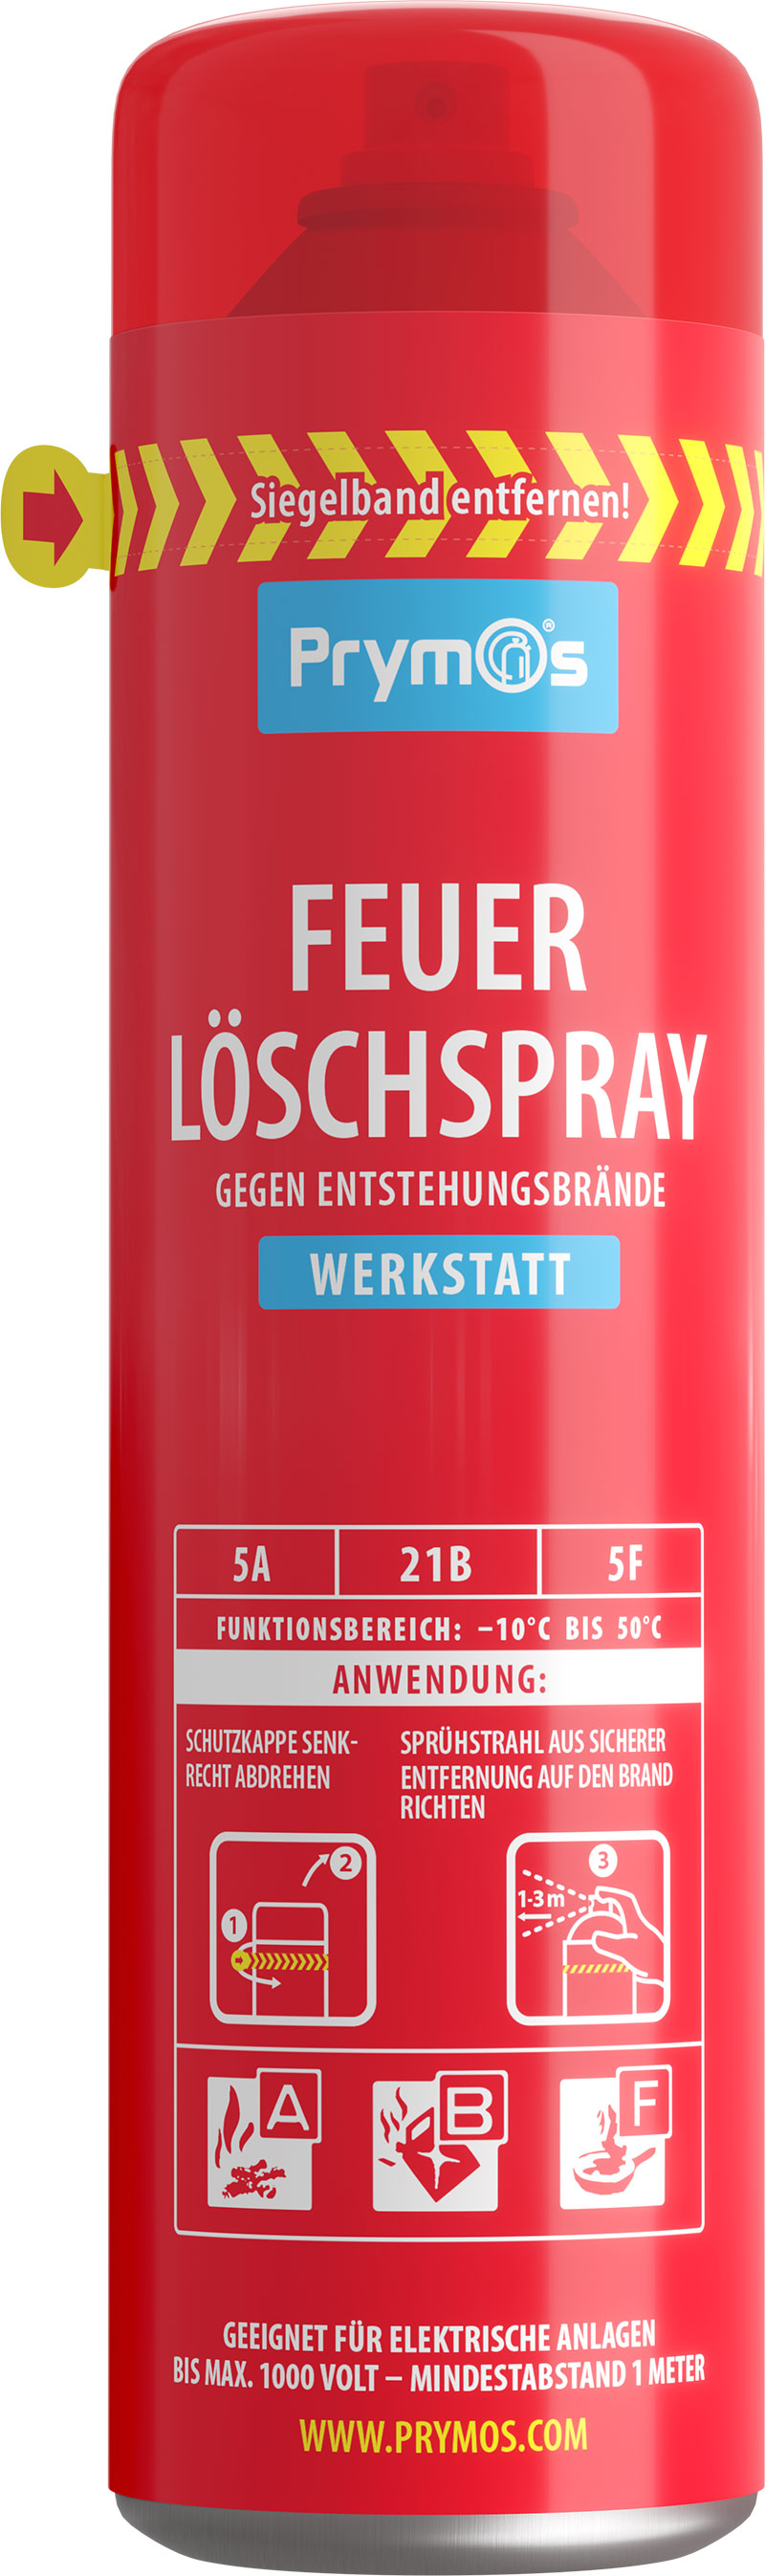 ✓ Design-Mantel aus Edelstahl für Prymos Feuerlöscher-Spray online kaufen